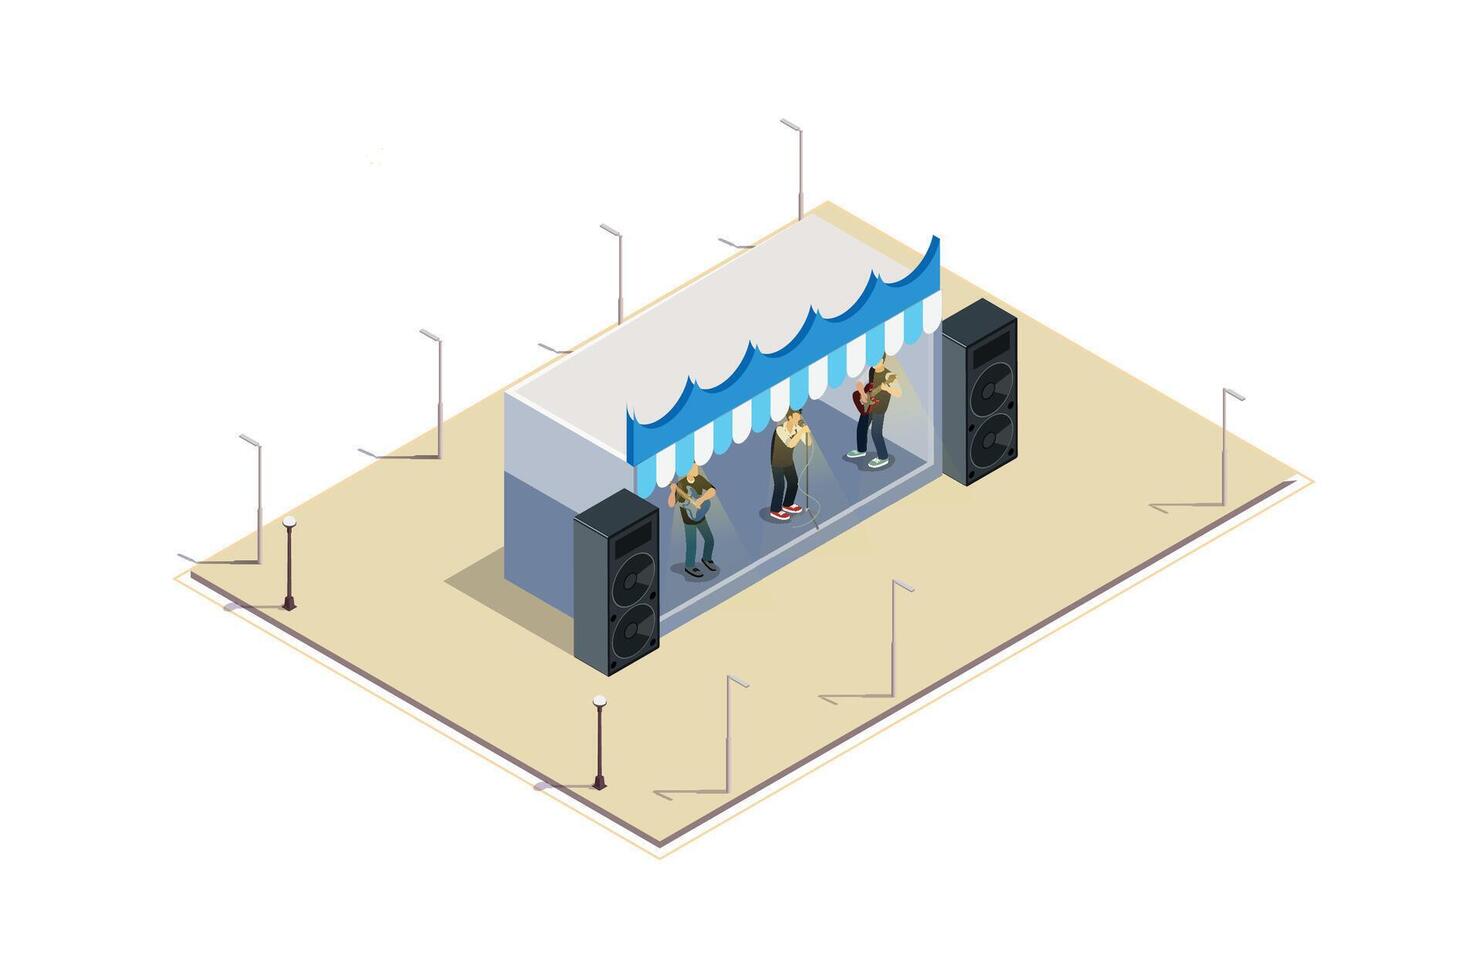 isometrisch Illustration von ein Musik- Veranstaltung Bühne, 3d Konzept isometrisch Aussicht von Konzert Party Hintergrund und Bühne Landschaft. vektor